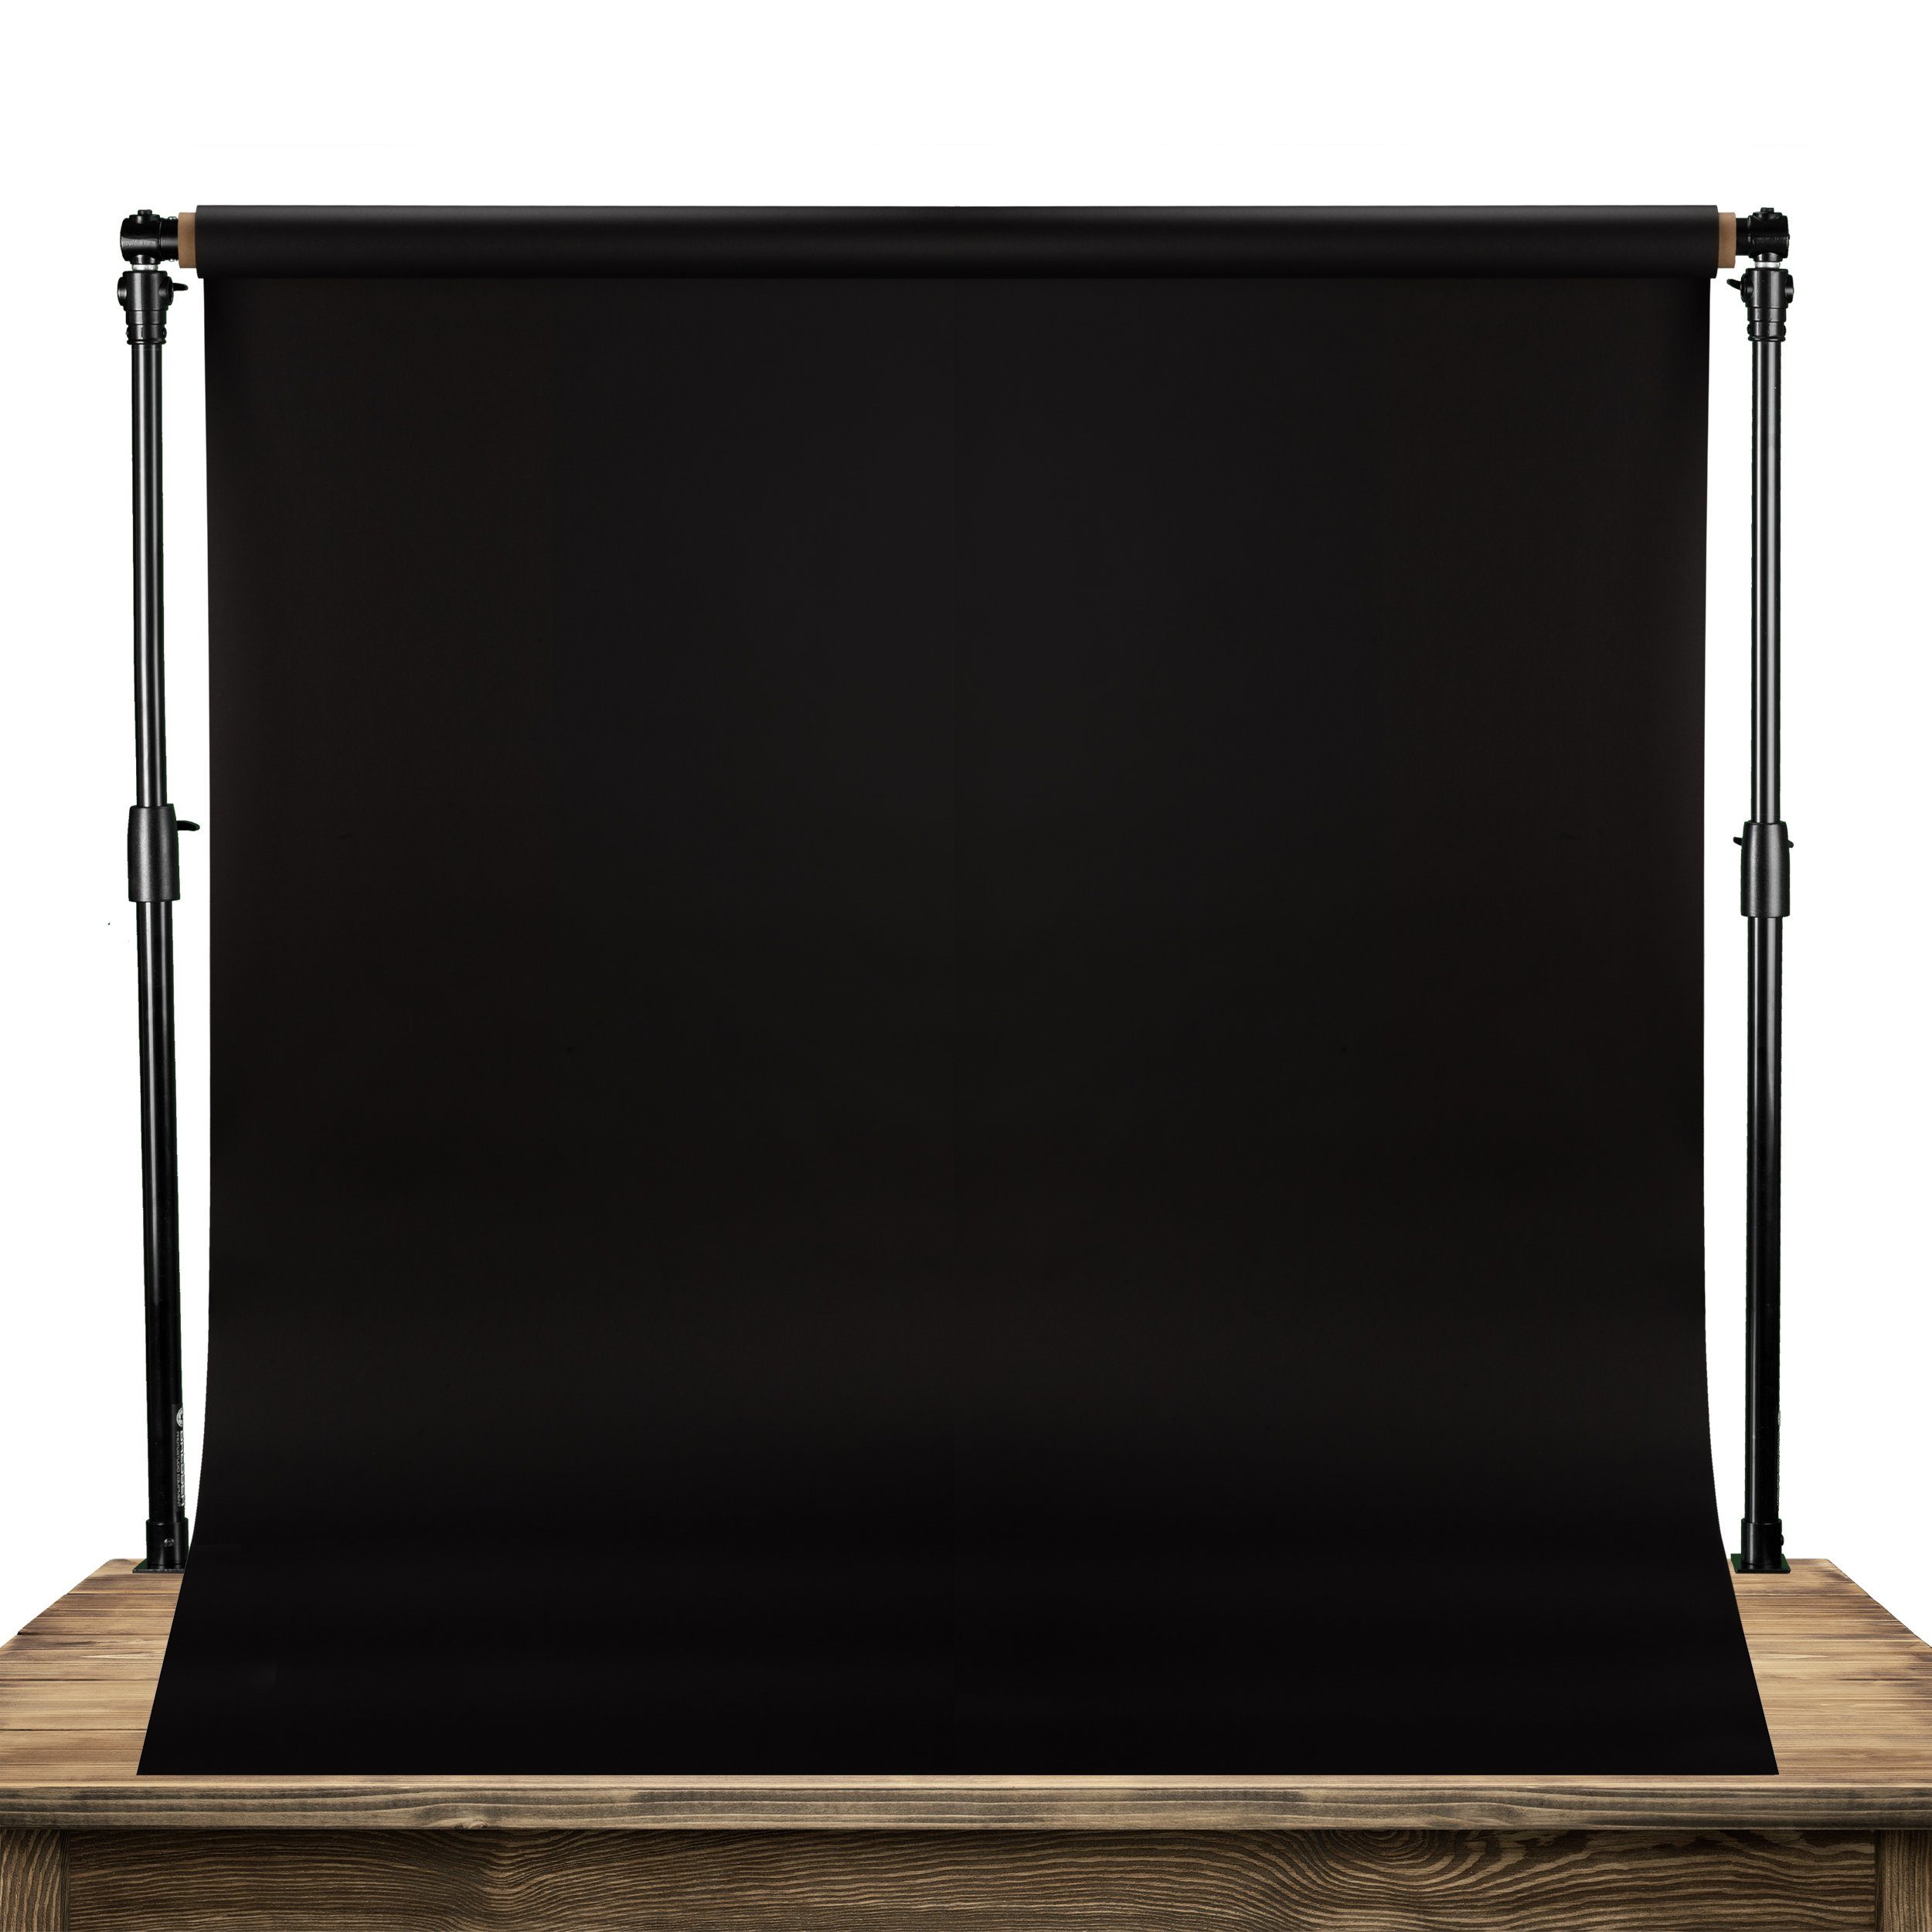 x 300cm BRESSER Hintergrundsystem 60 Tabletop Aufhängesystem